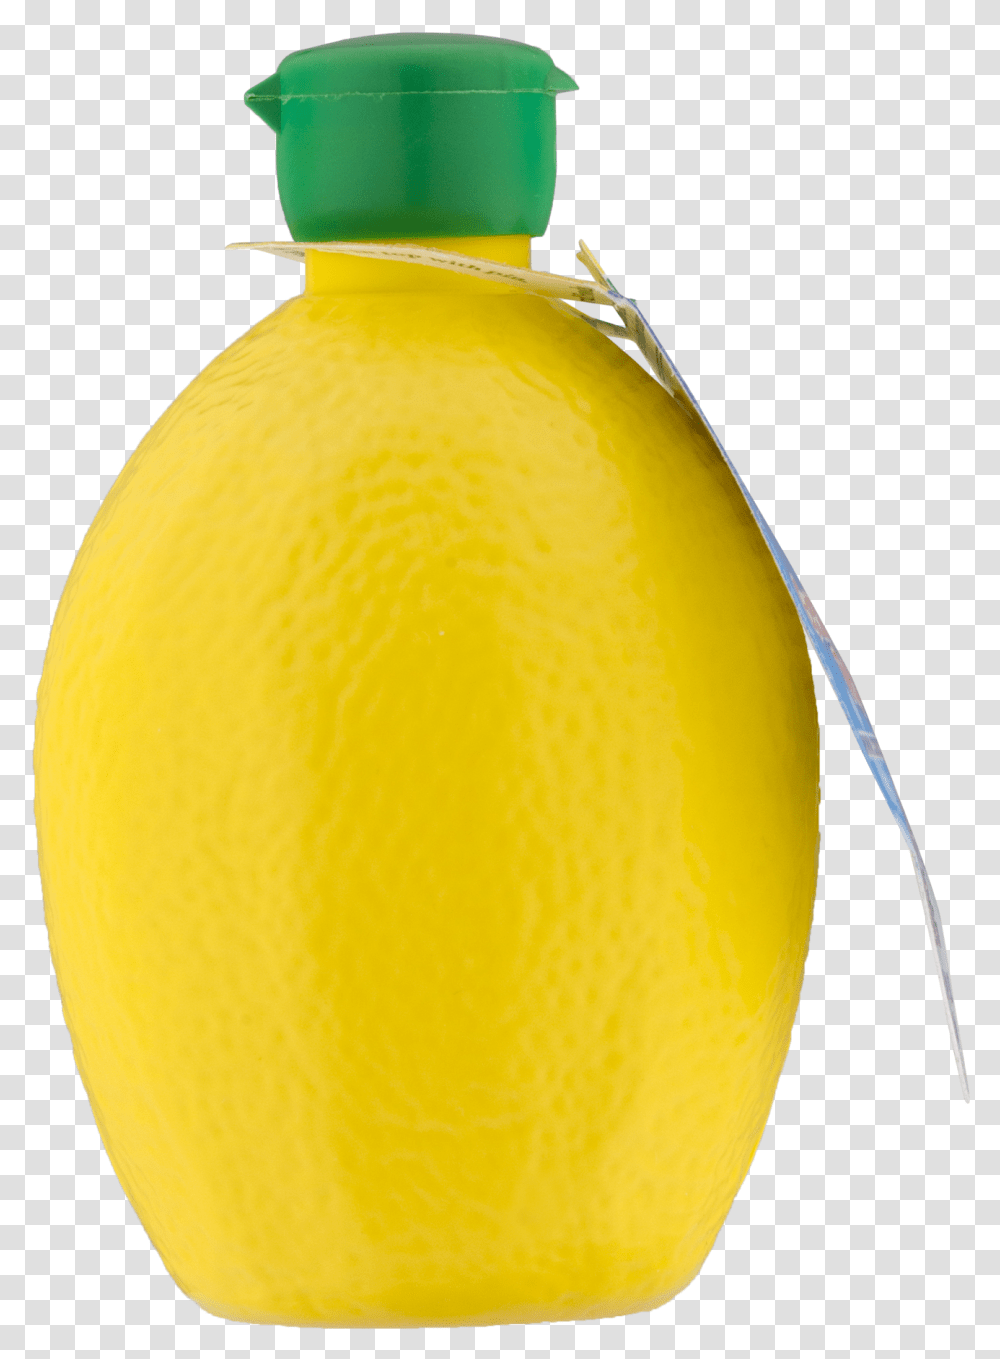 Glass Bottle, Beverage, Drink, Juice, Citrus Fruit Transparent Png